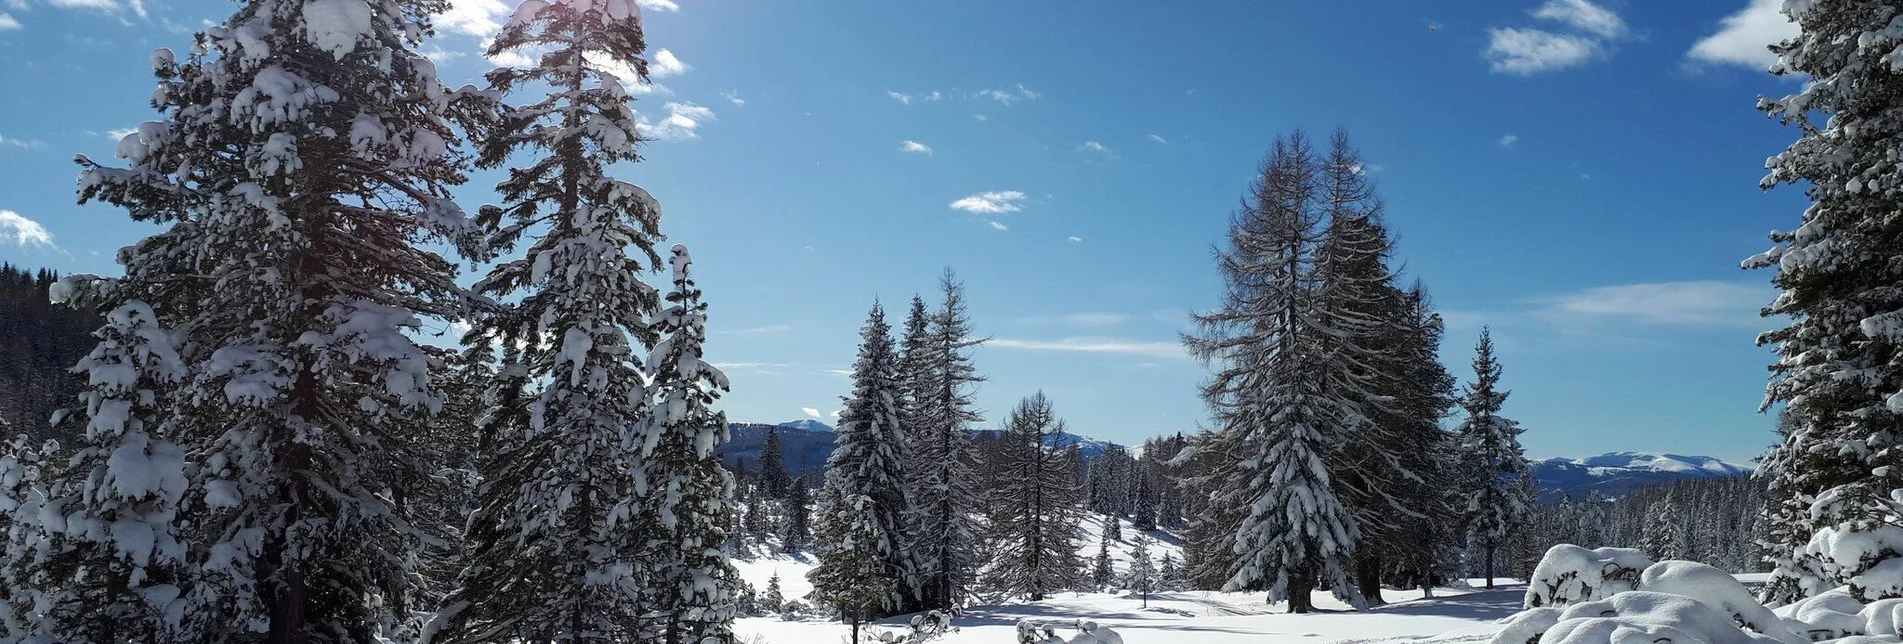 Winterwandern Naturlehrpfad Krakauschatten - Touren-Impression #1 | © Tourismusverband Region Murau